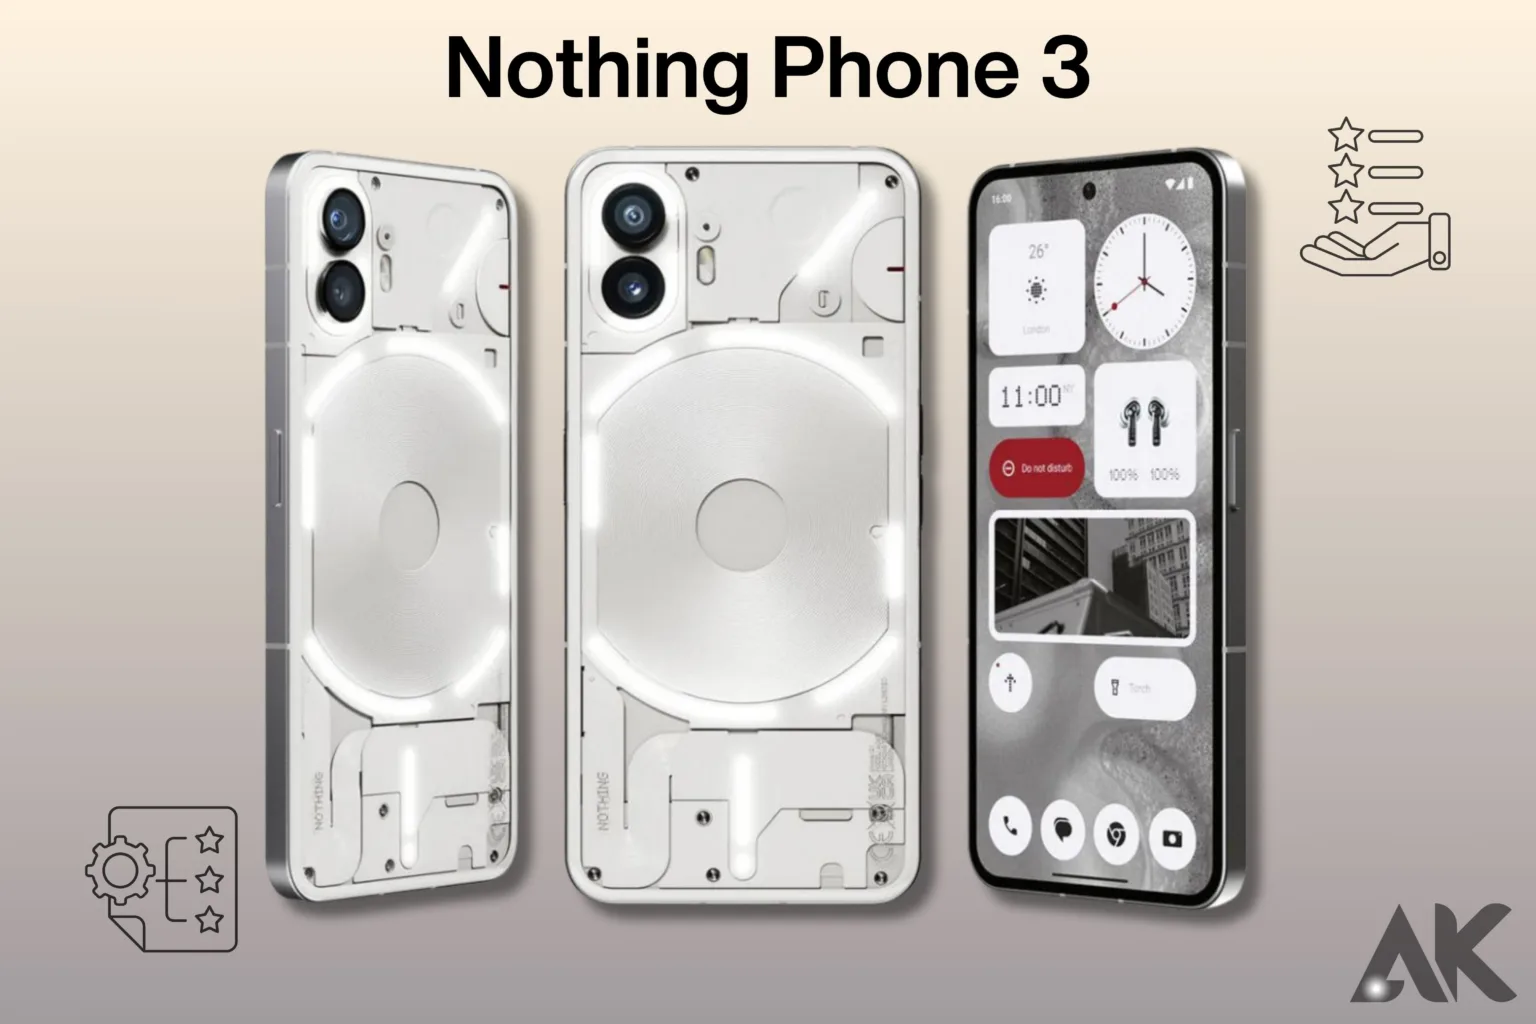 Nothing Phone 3 specs